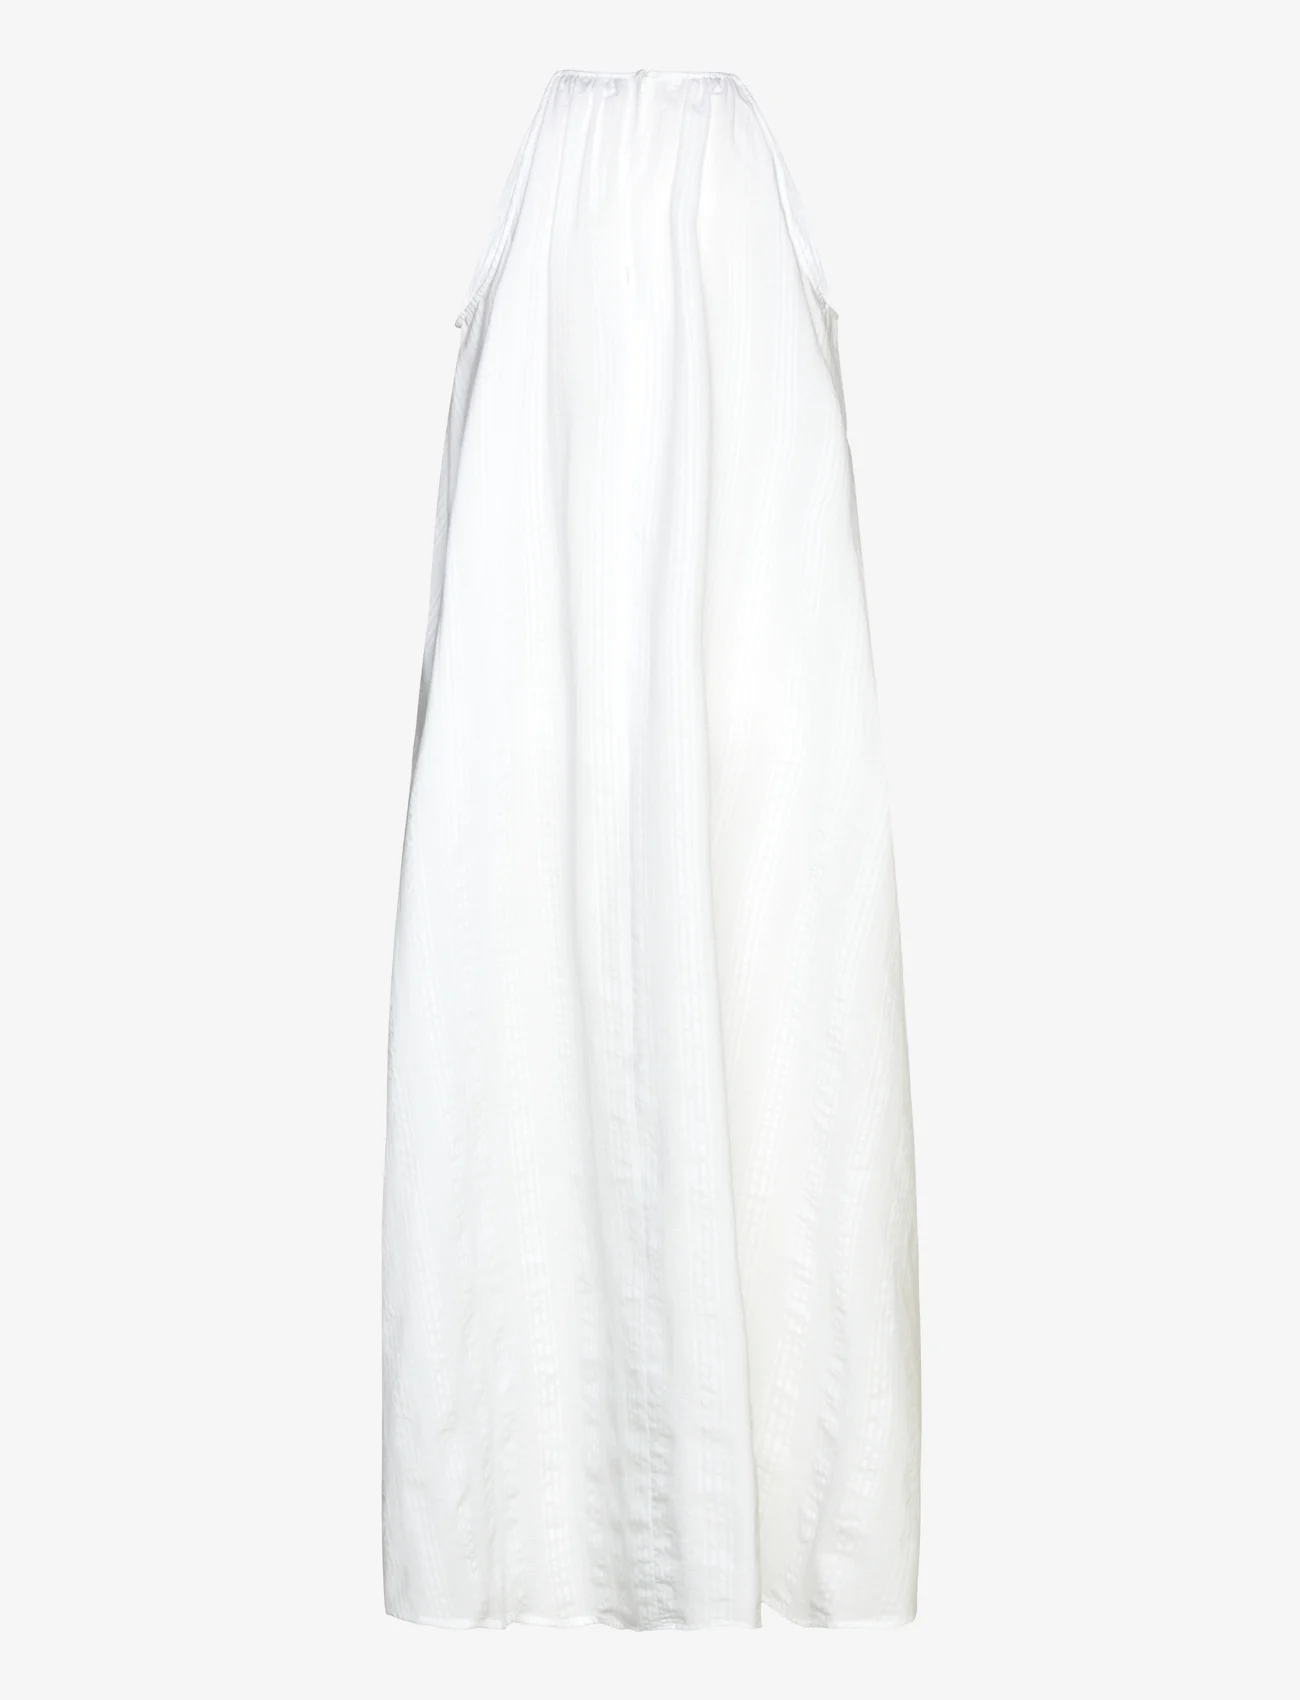 Stylein - JARDIN DRESS - white - 1